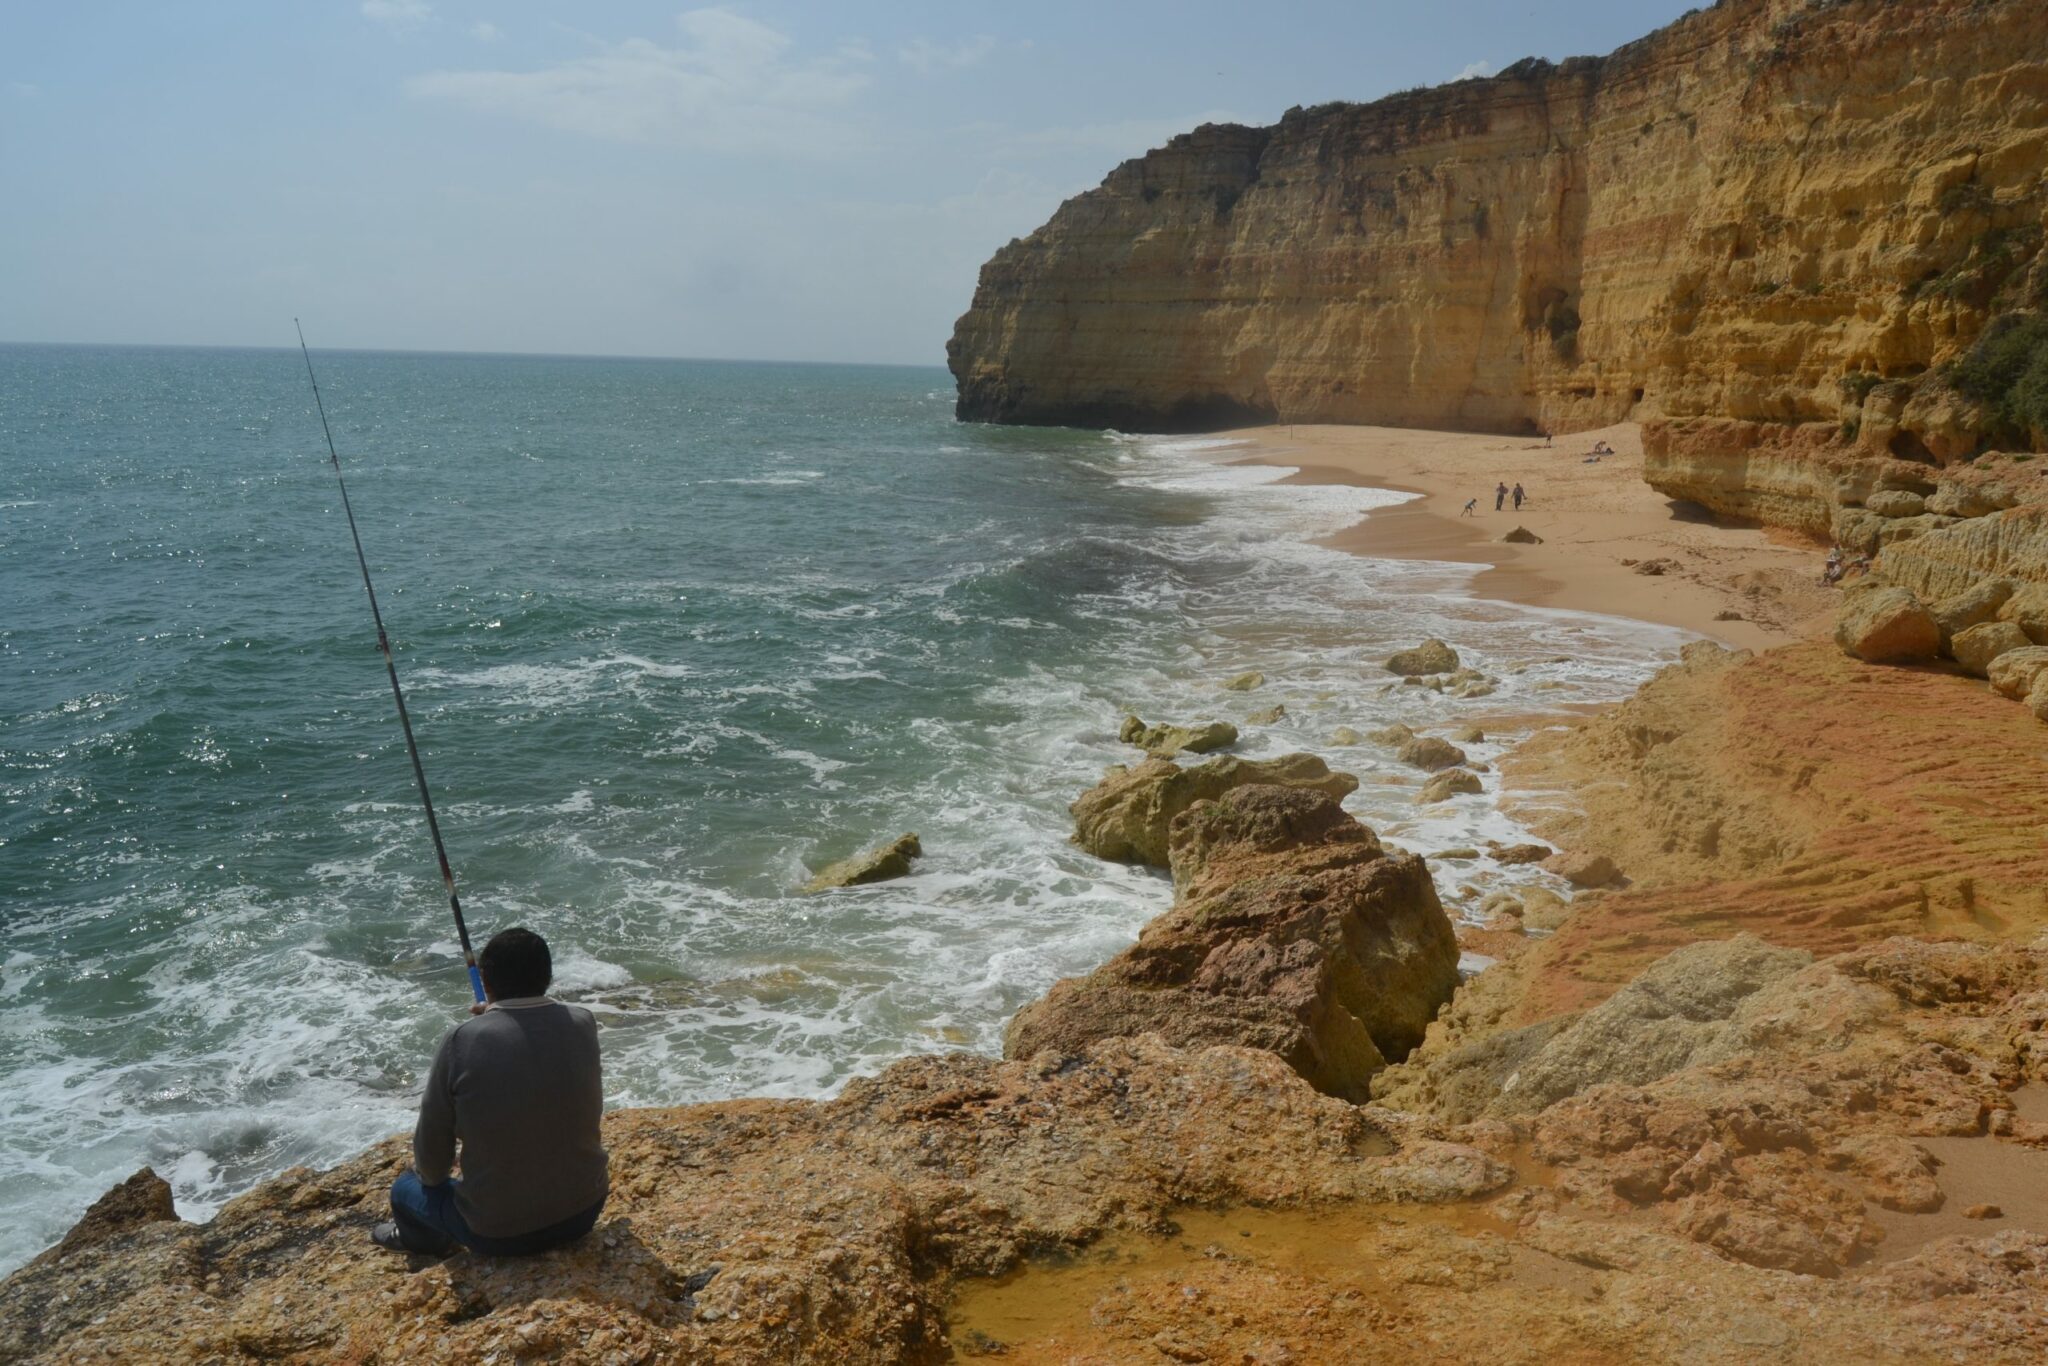  Pescador en Praia do Vale Centeanes